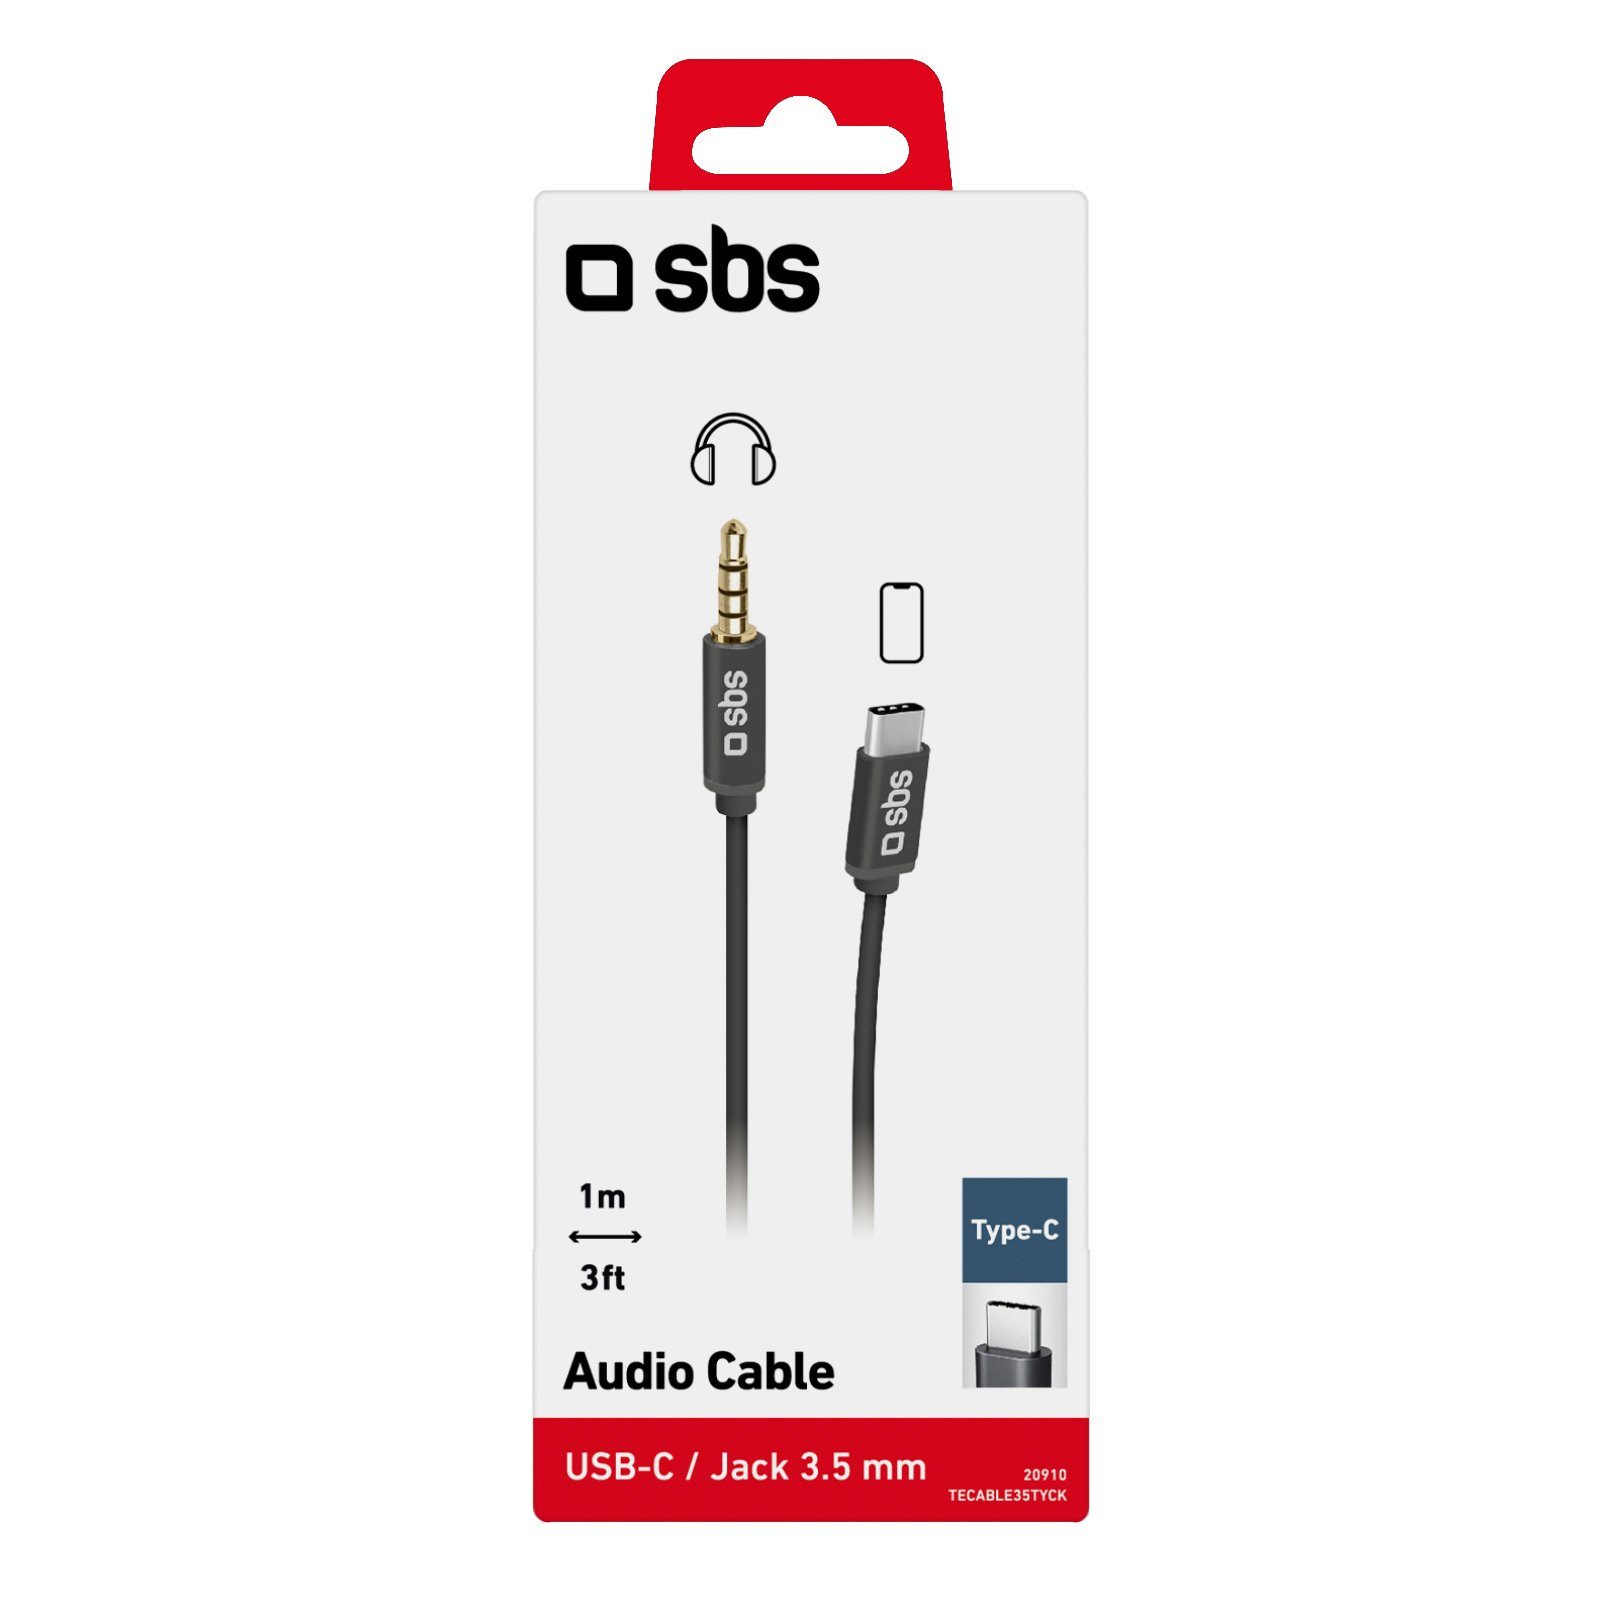 SBS 3.5mm zu USB-C Kabel 1m schwarz - Kabel - Digital/Daten